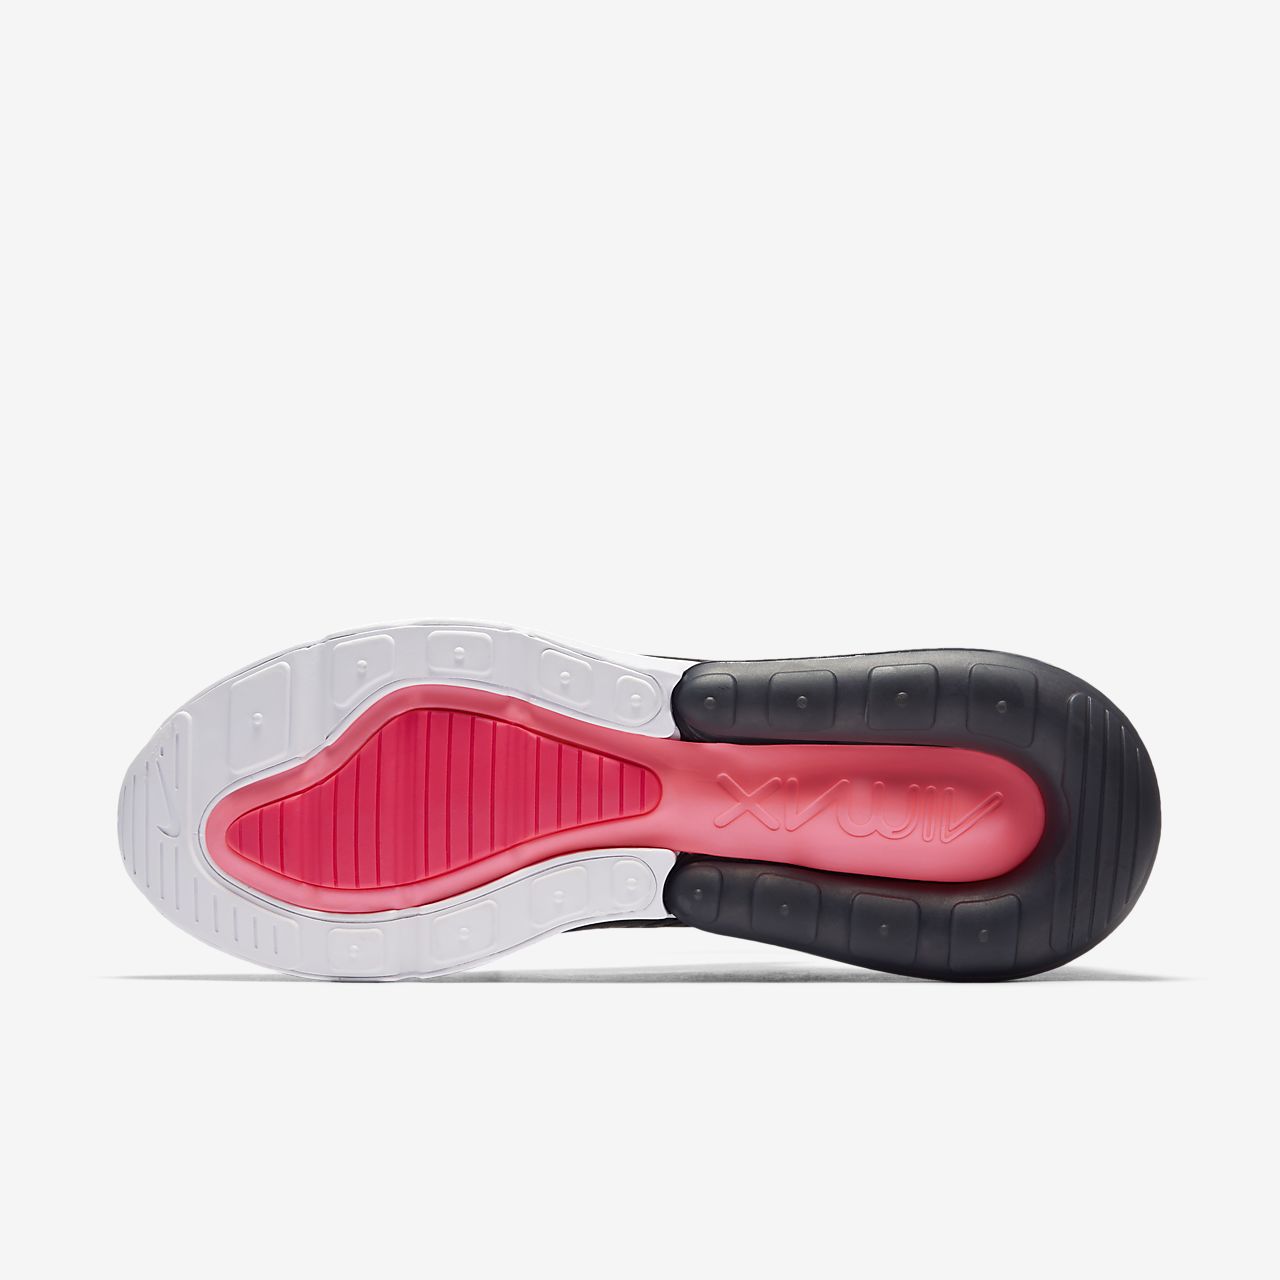 Nike Air Max 270 - Sneakers - Sort/Hvide/Rød/MørkeGrå | DK-16009